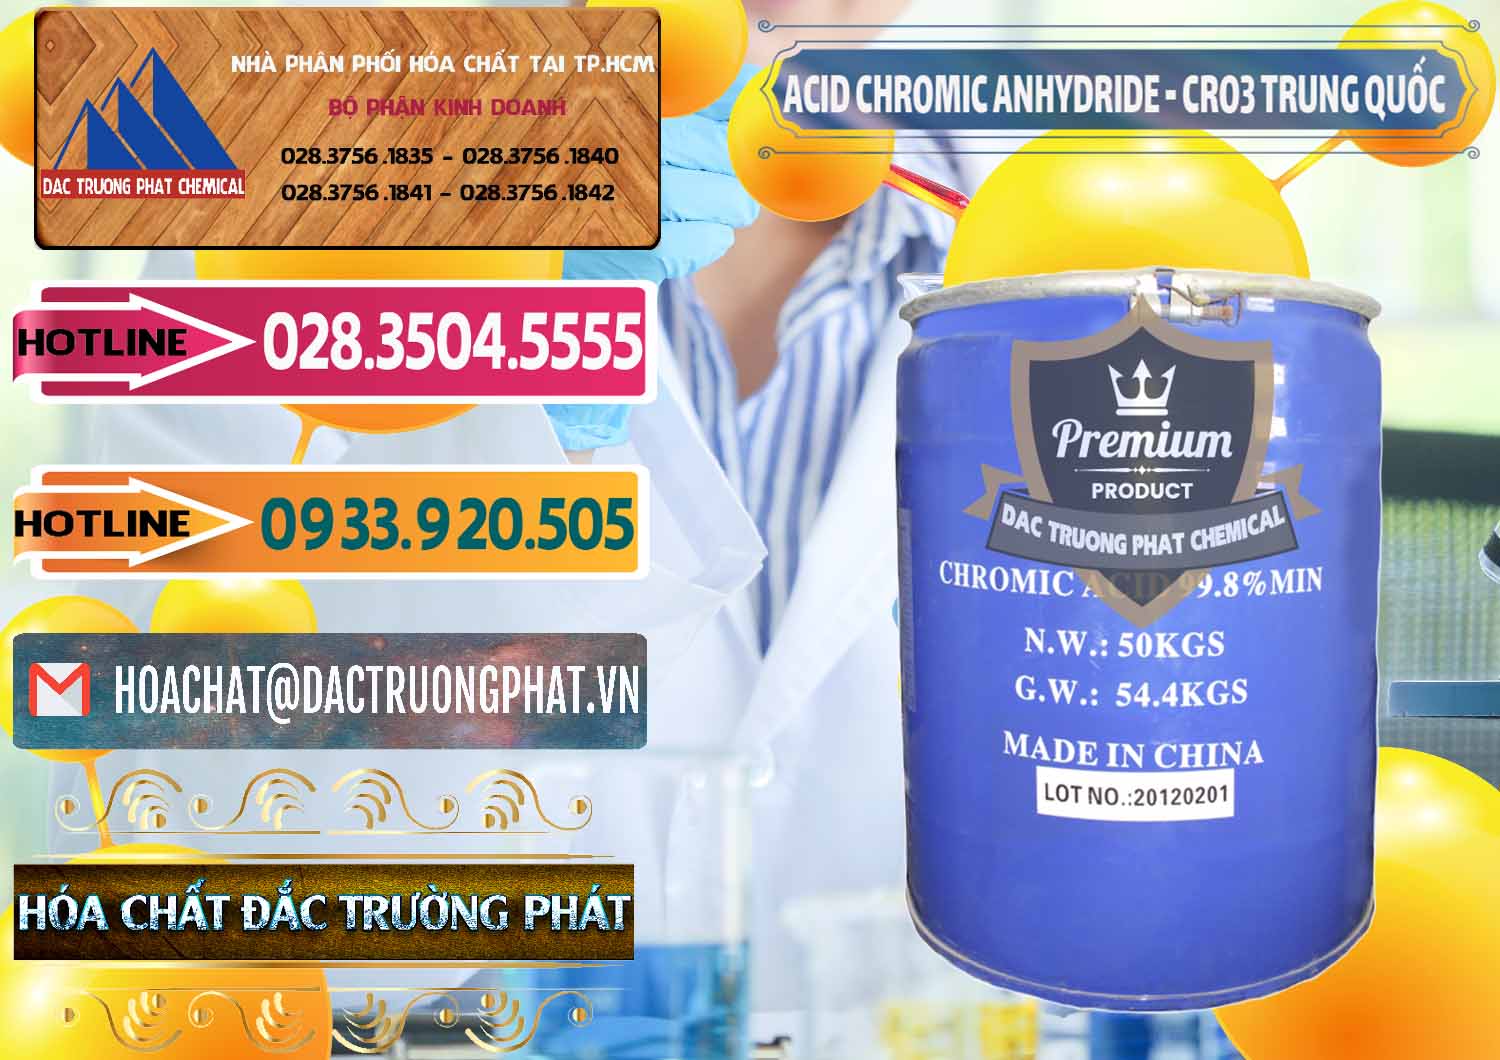 Cty chuyên kinh doanh và bán Acid Chromic Anhydride - Cromic CRO3 Trung Quốc China - 0007 - Nơi cung cấp ( phân phối ) hóa chất tại TP.HCM - dactruongphat.vn